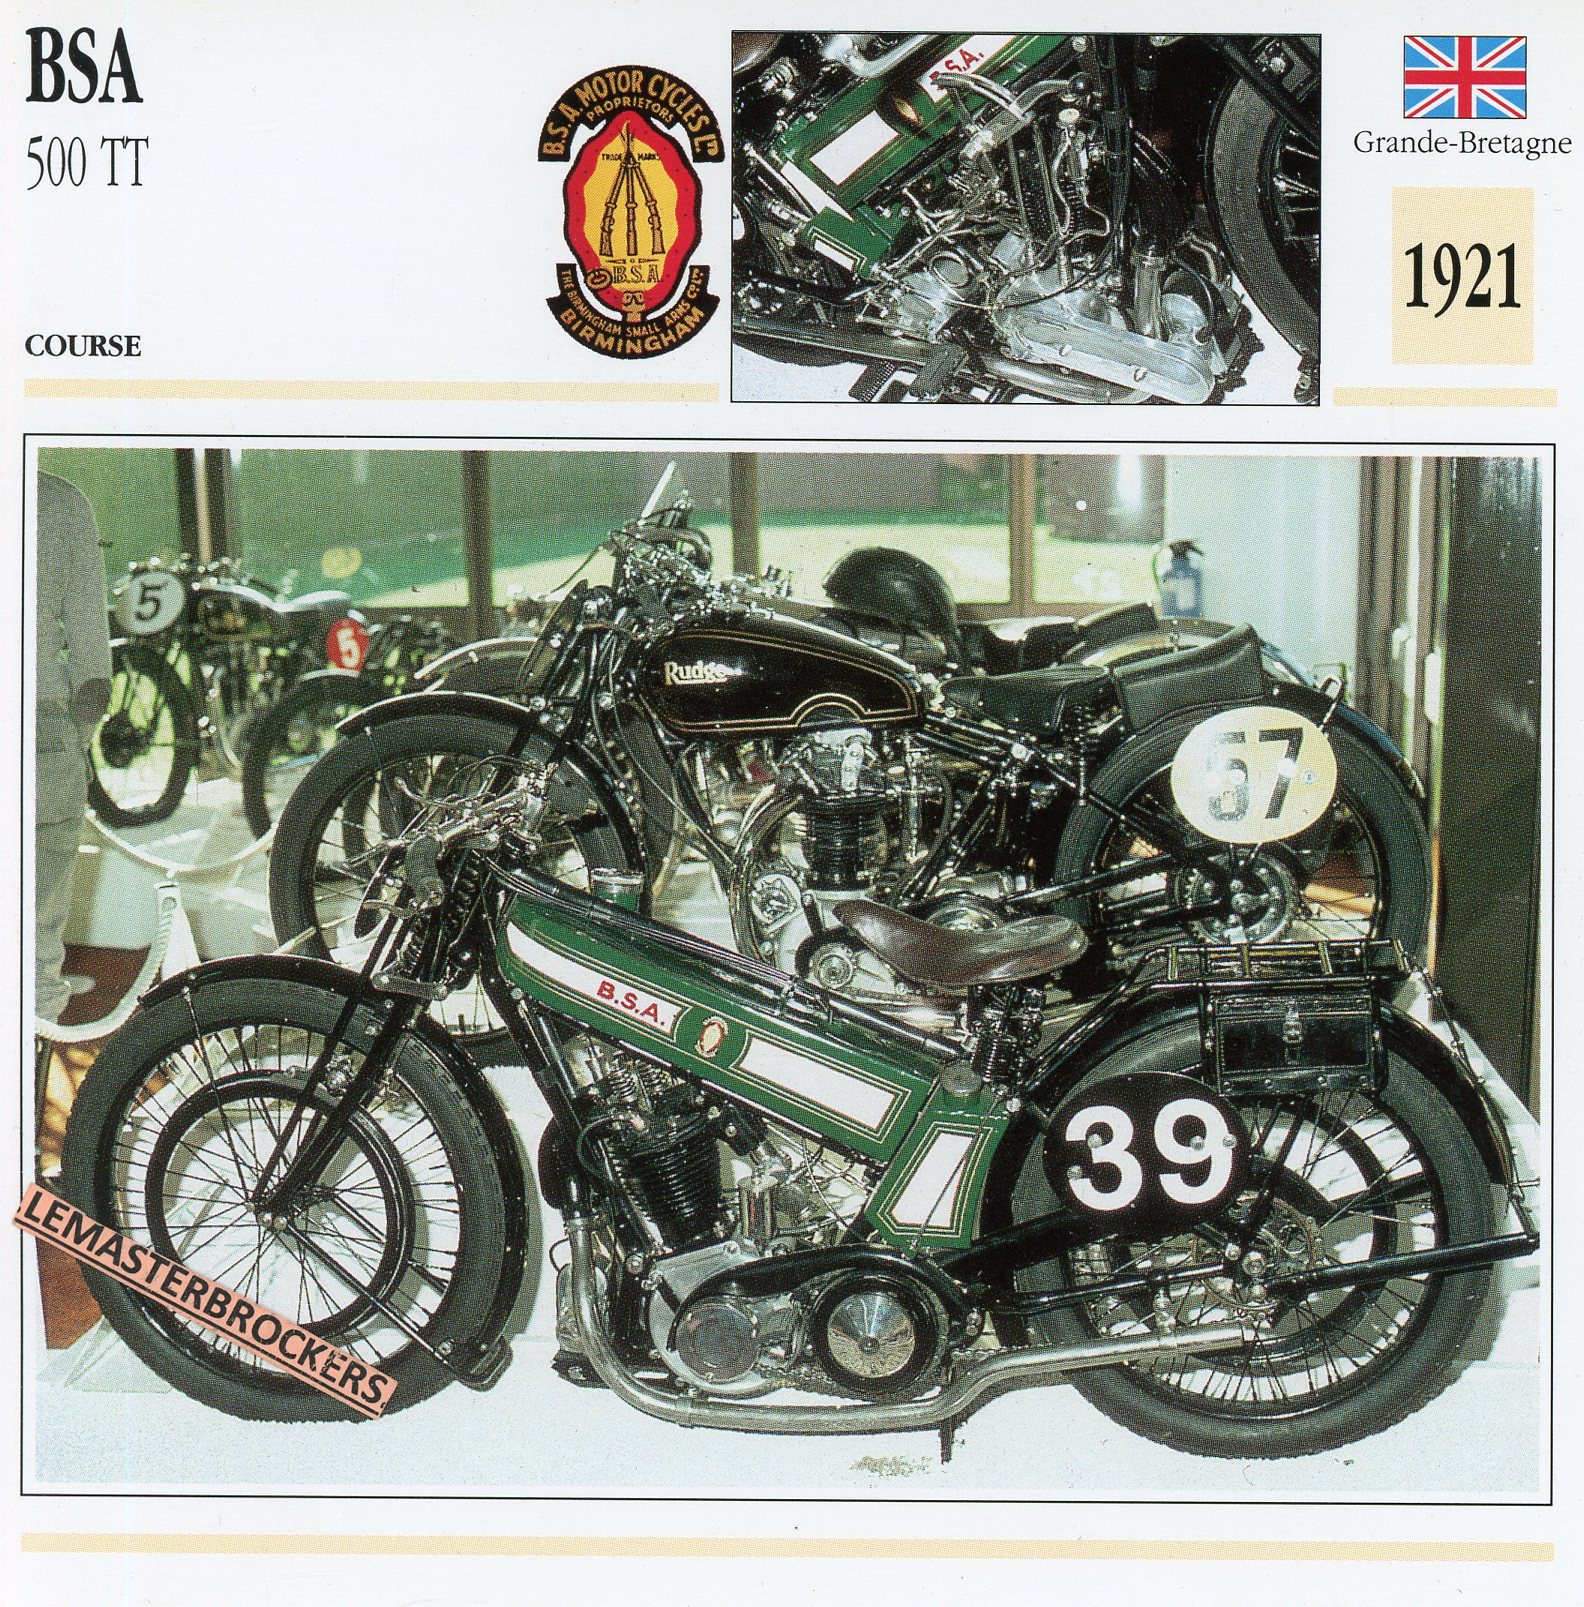 BSA-500-TT-1921-FICHE-MOTO-CARDS-ATLAS-LEMASTERBROCKERS